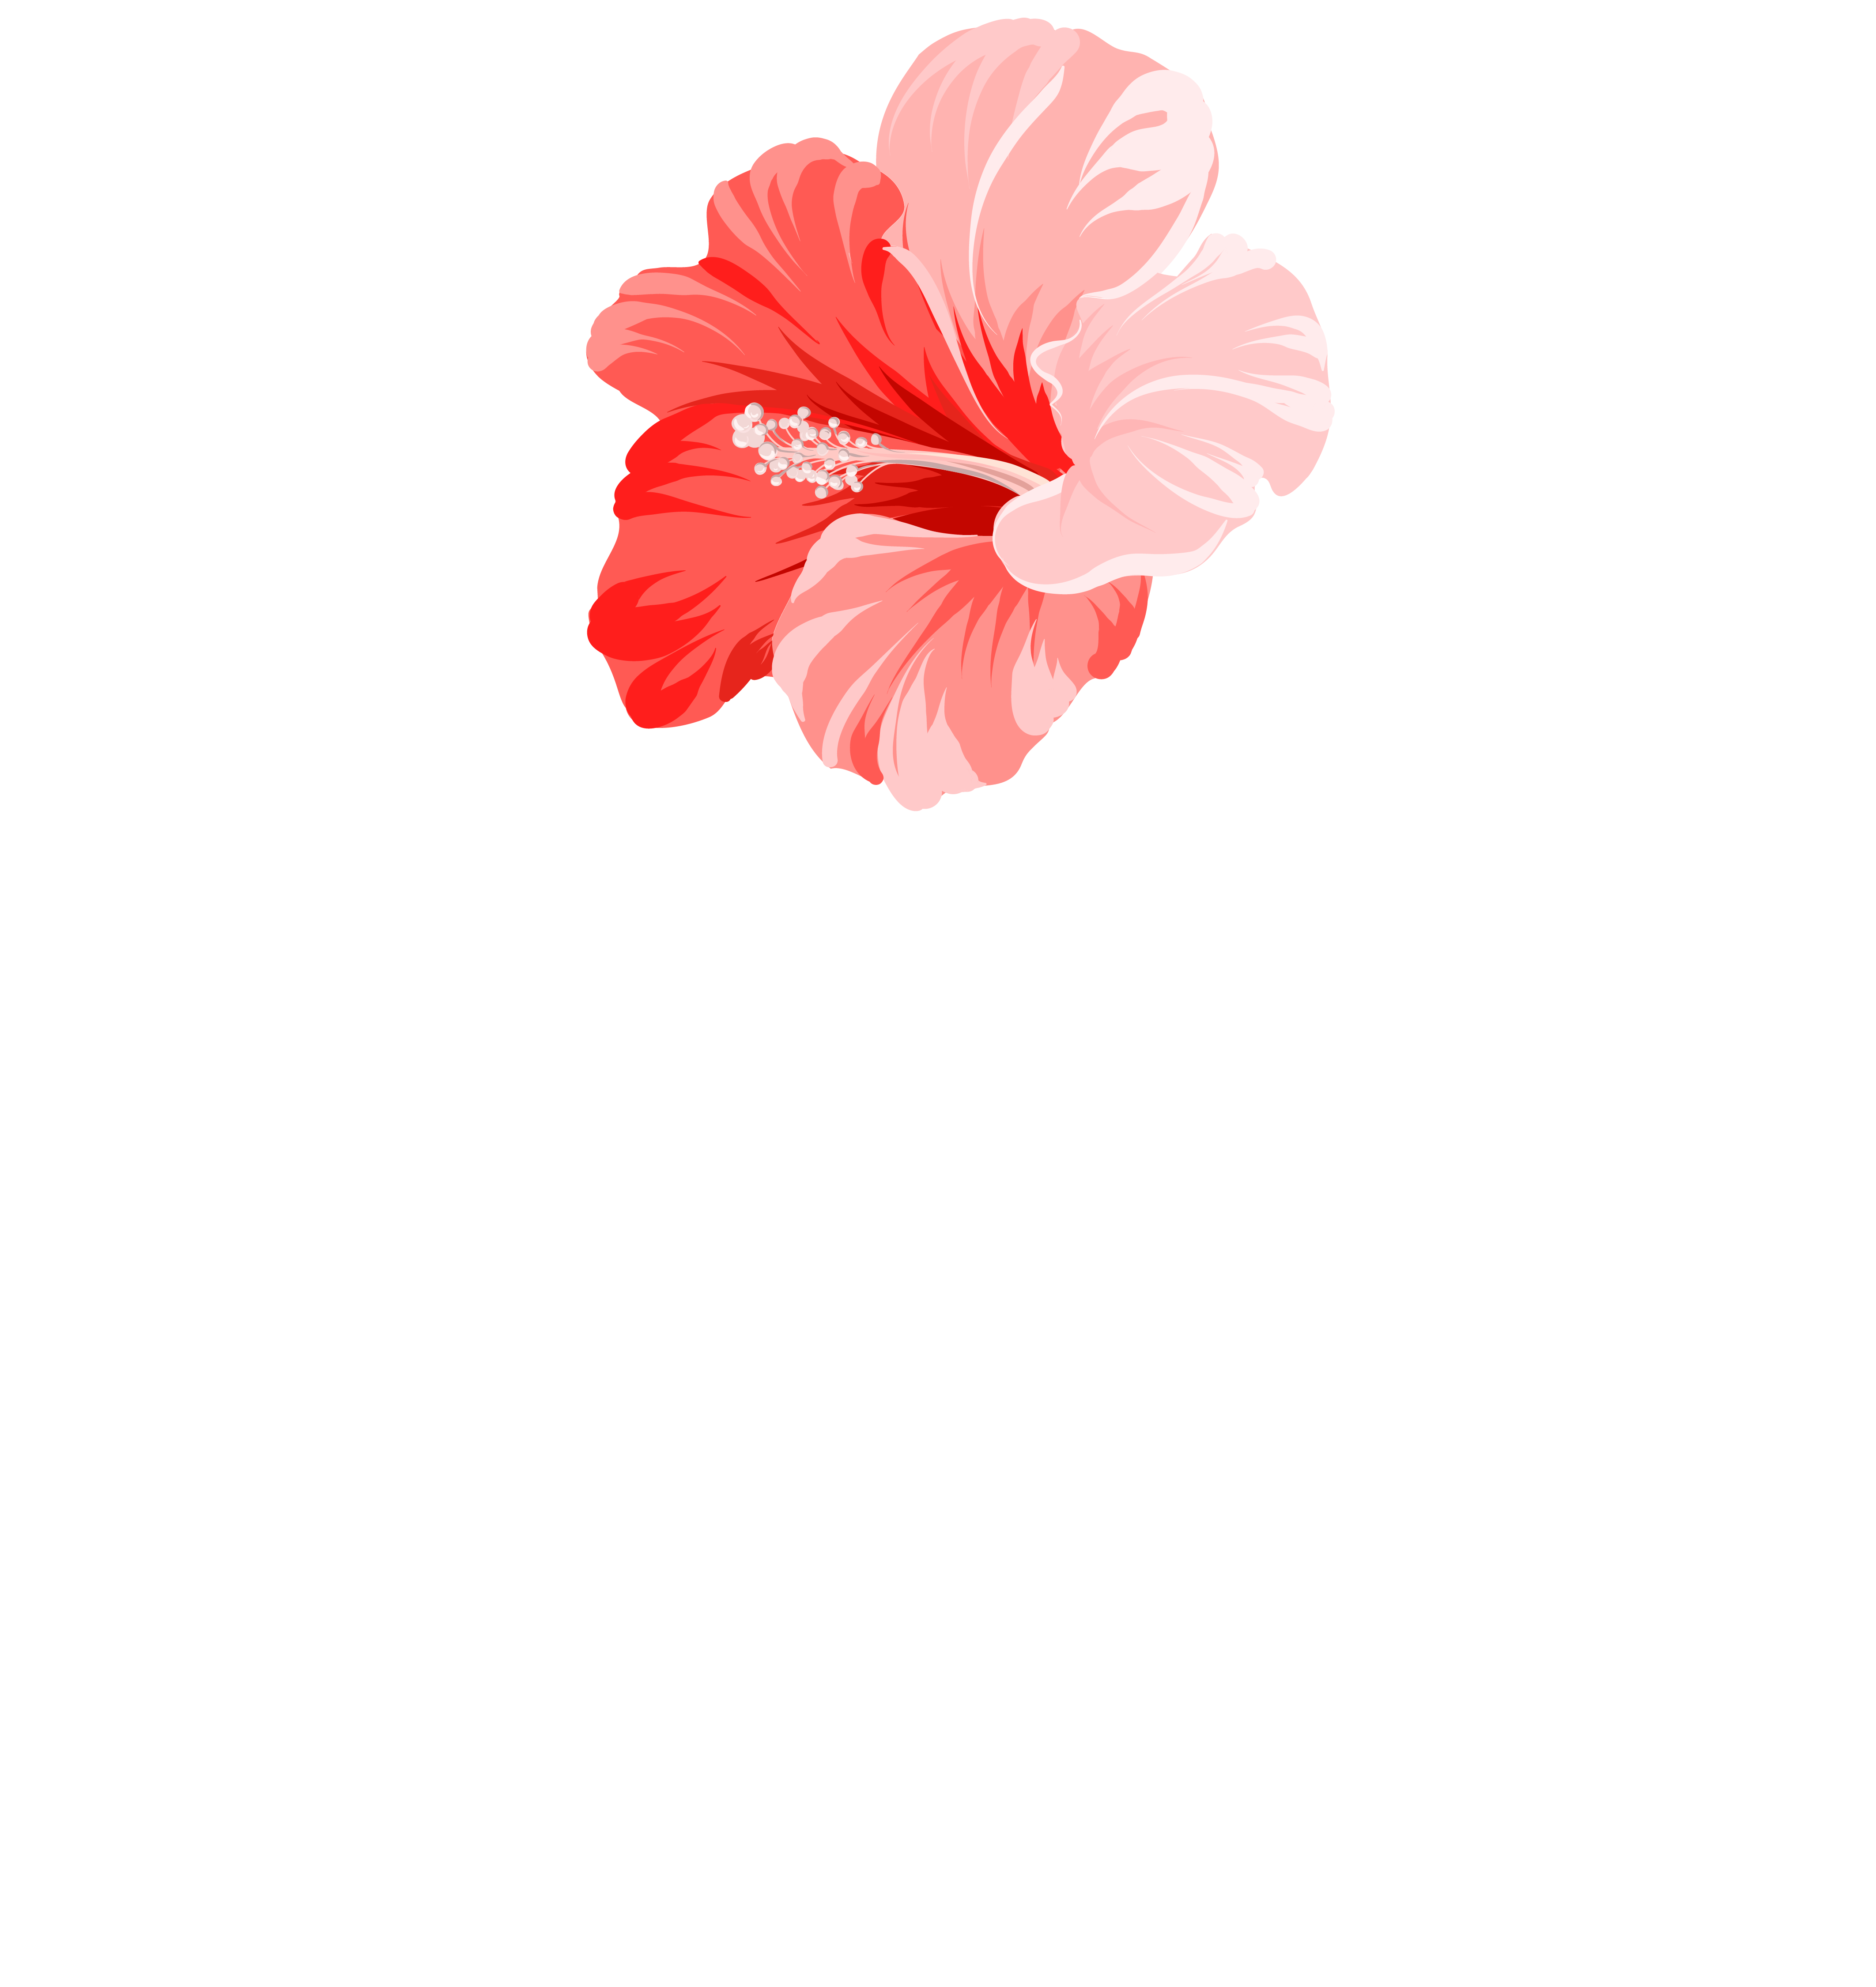 Festiv'arts Caribéen de Magog